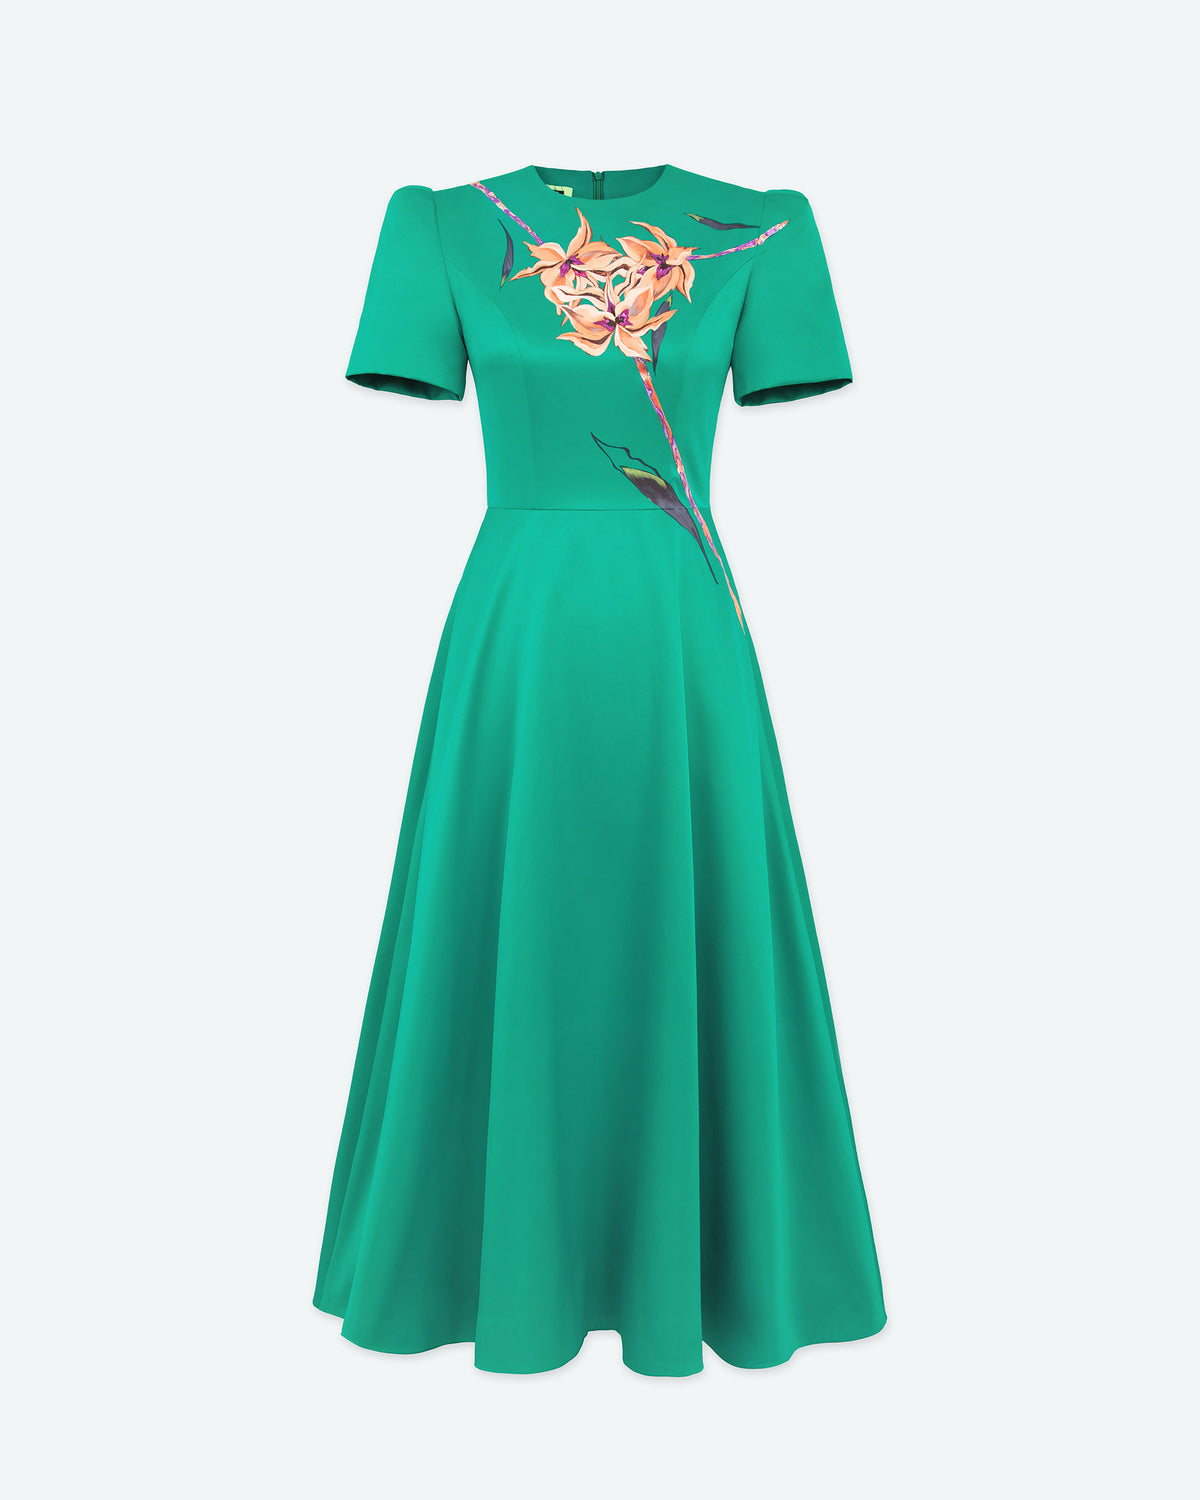 Bloom - Jade Green Midi Dress